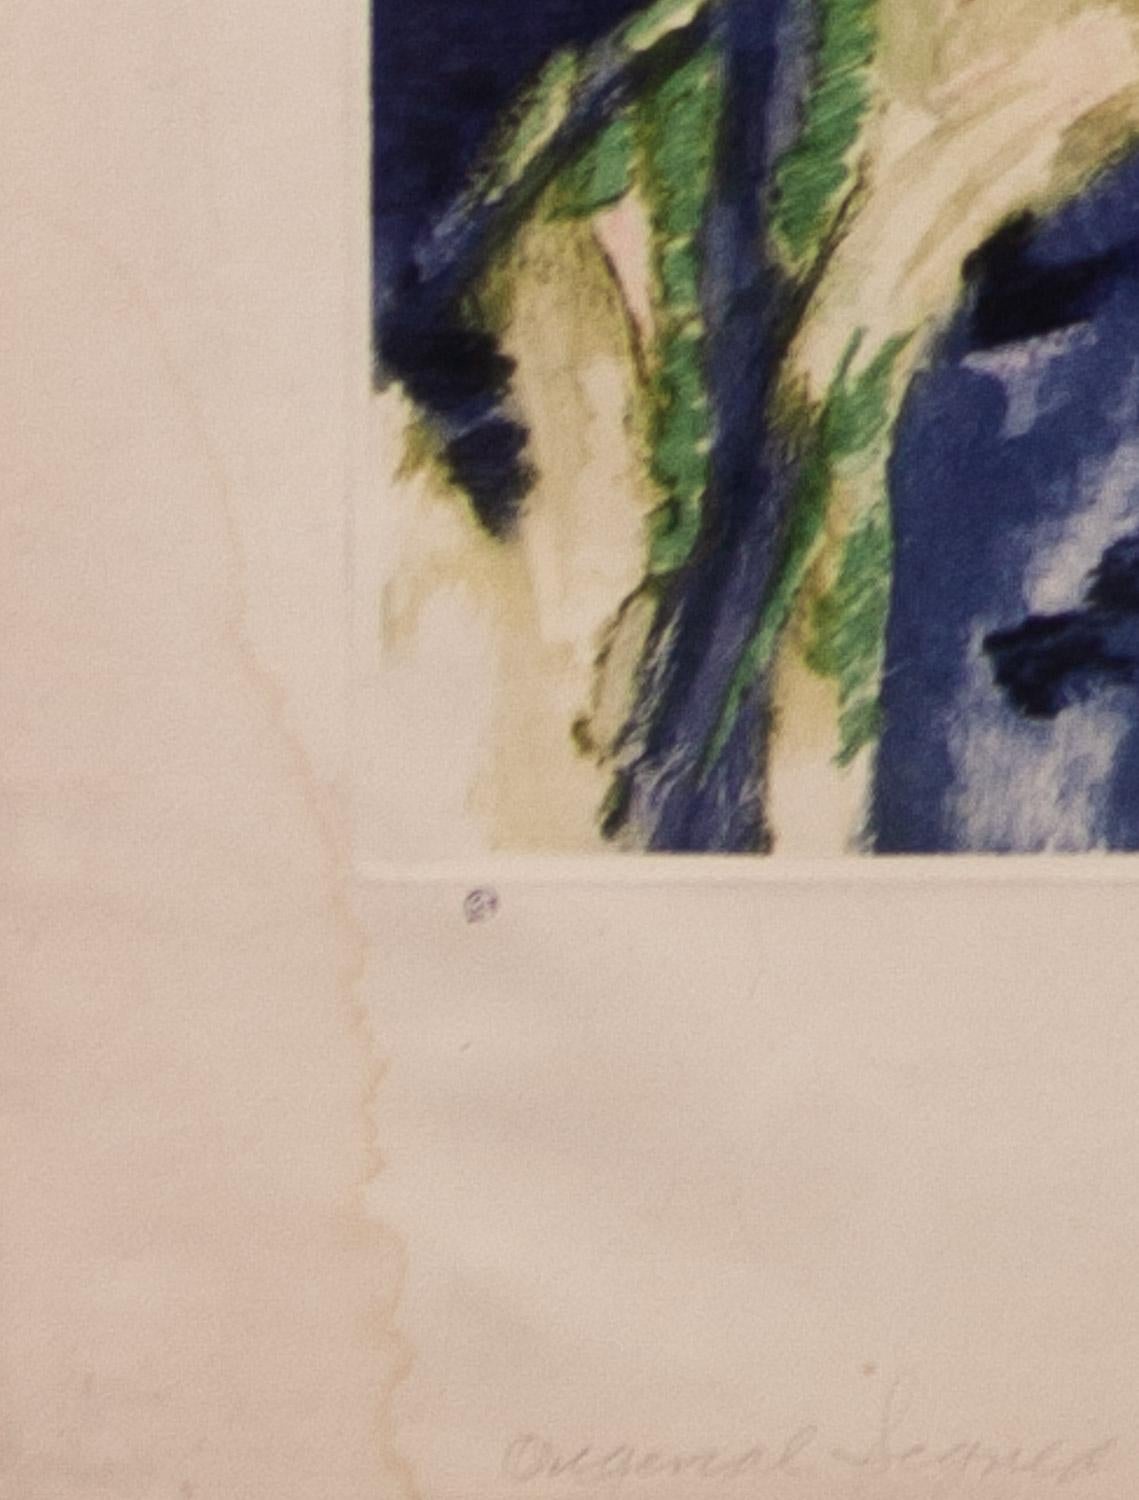            Blumenstillleben ist eine original signierte Radierung von J. D. van Caulaert, herausgegeben von Camila Lucas inc , Sidney Lucas, NYC. In gutem Zustand mit leuchtenden Farben. Ein leichter Wasserfleck im linken unteren Rand.              